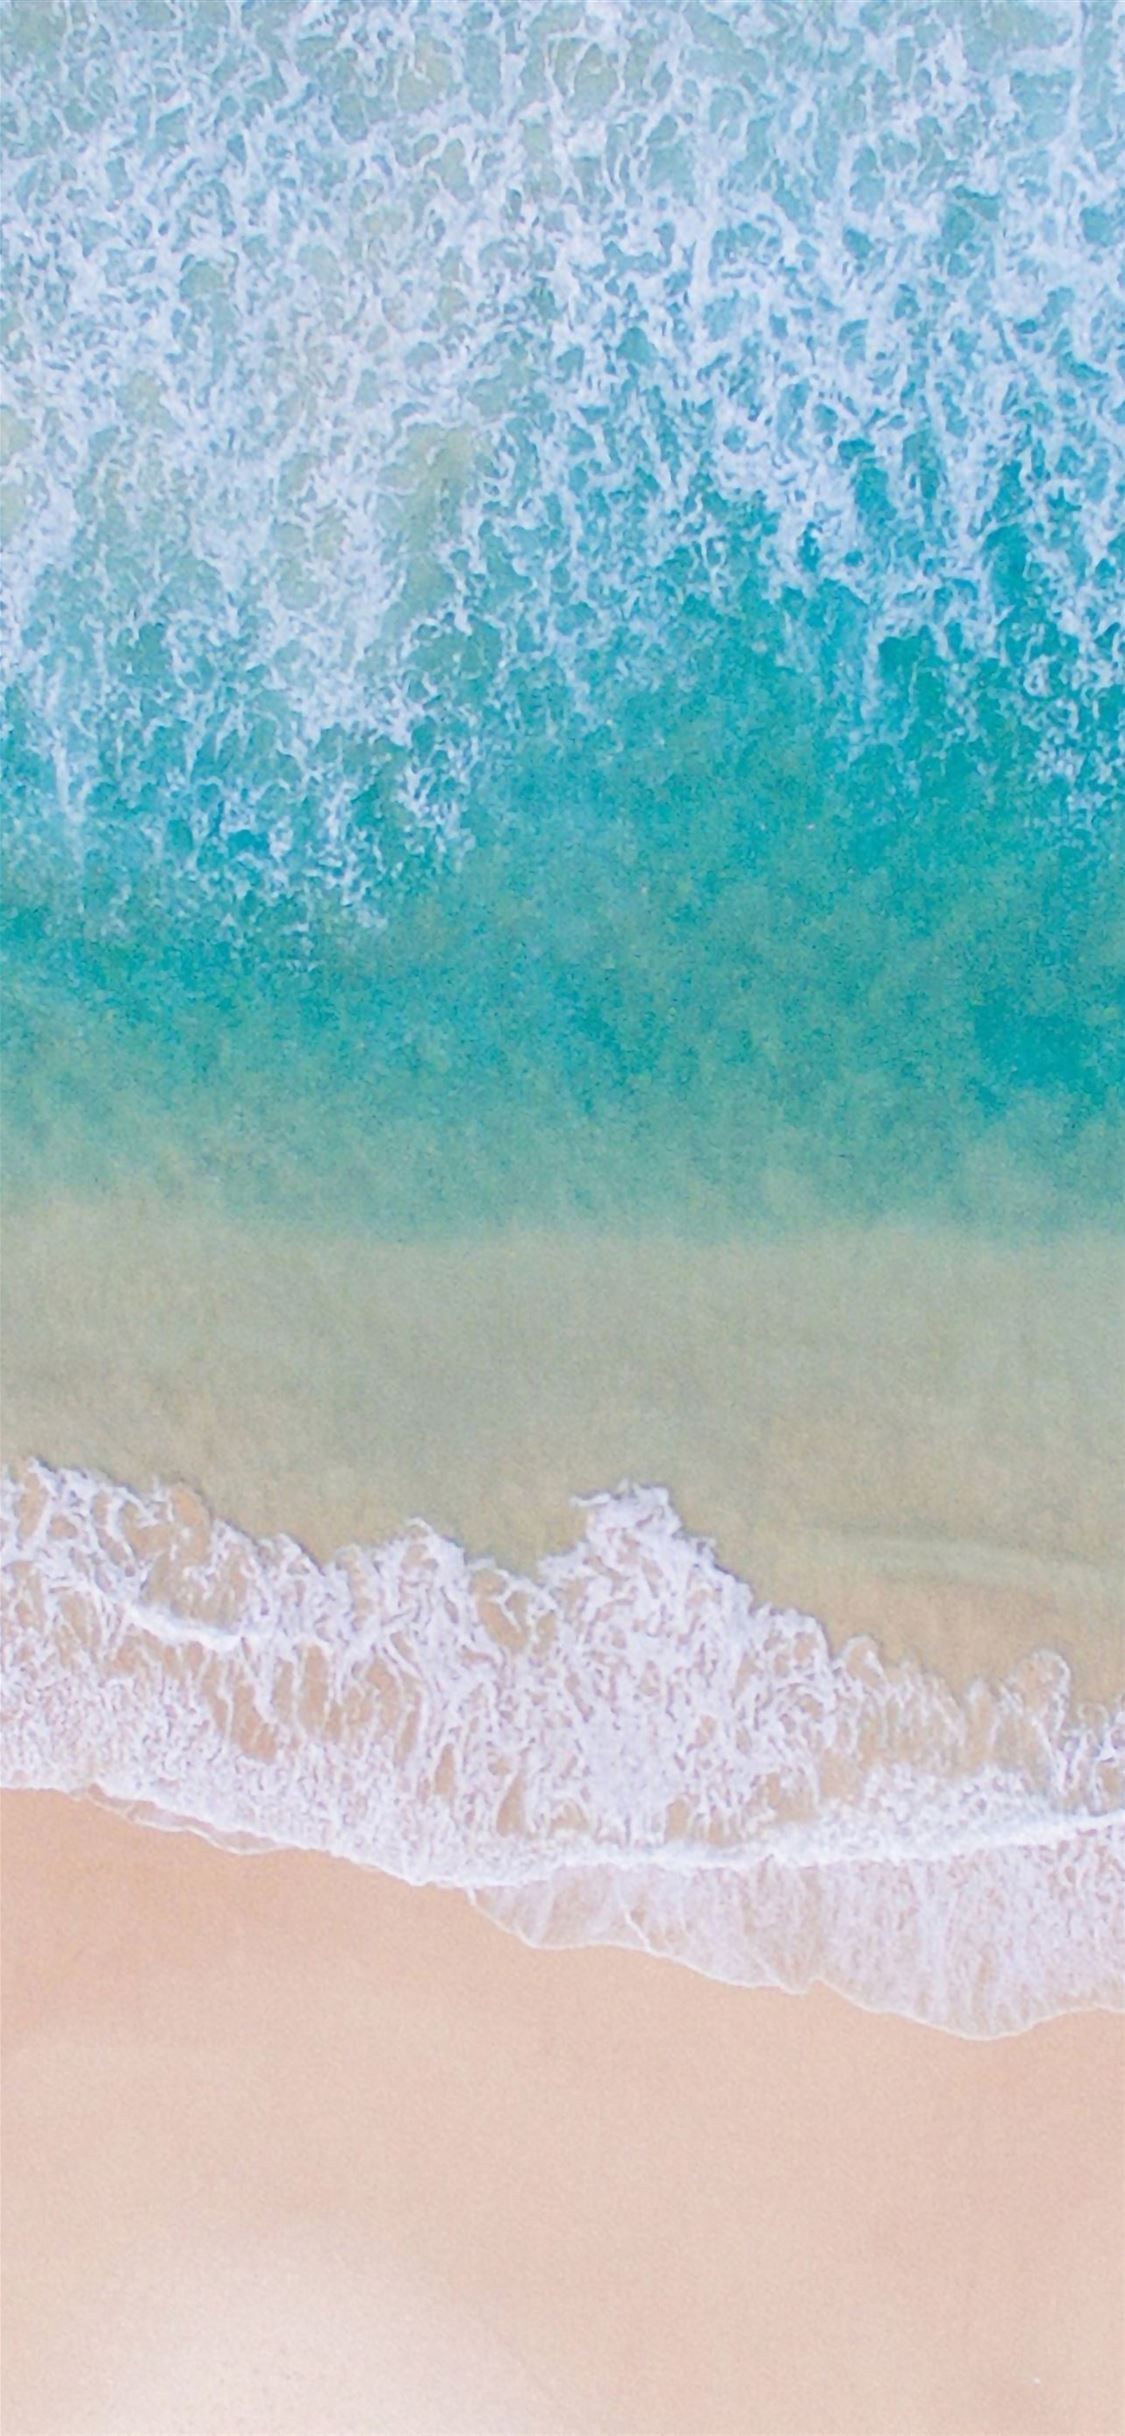 Blue sea beach iPhone wallpaper 